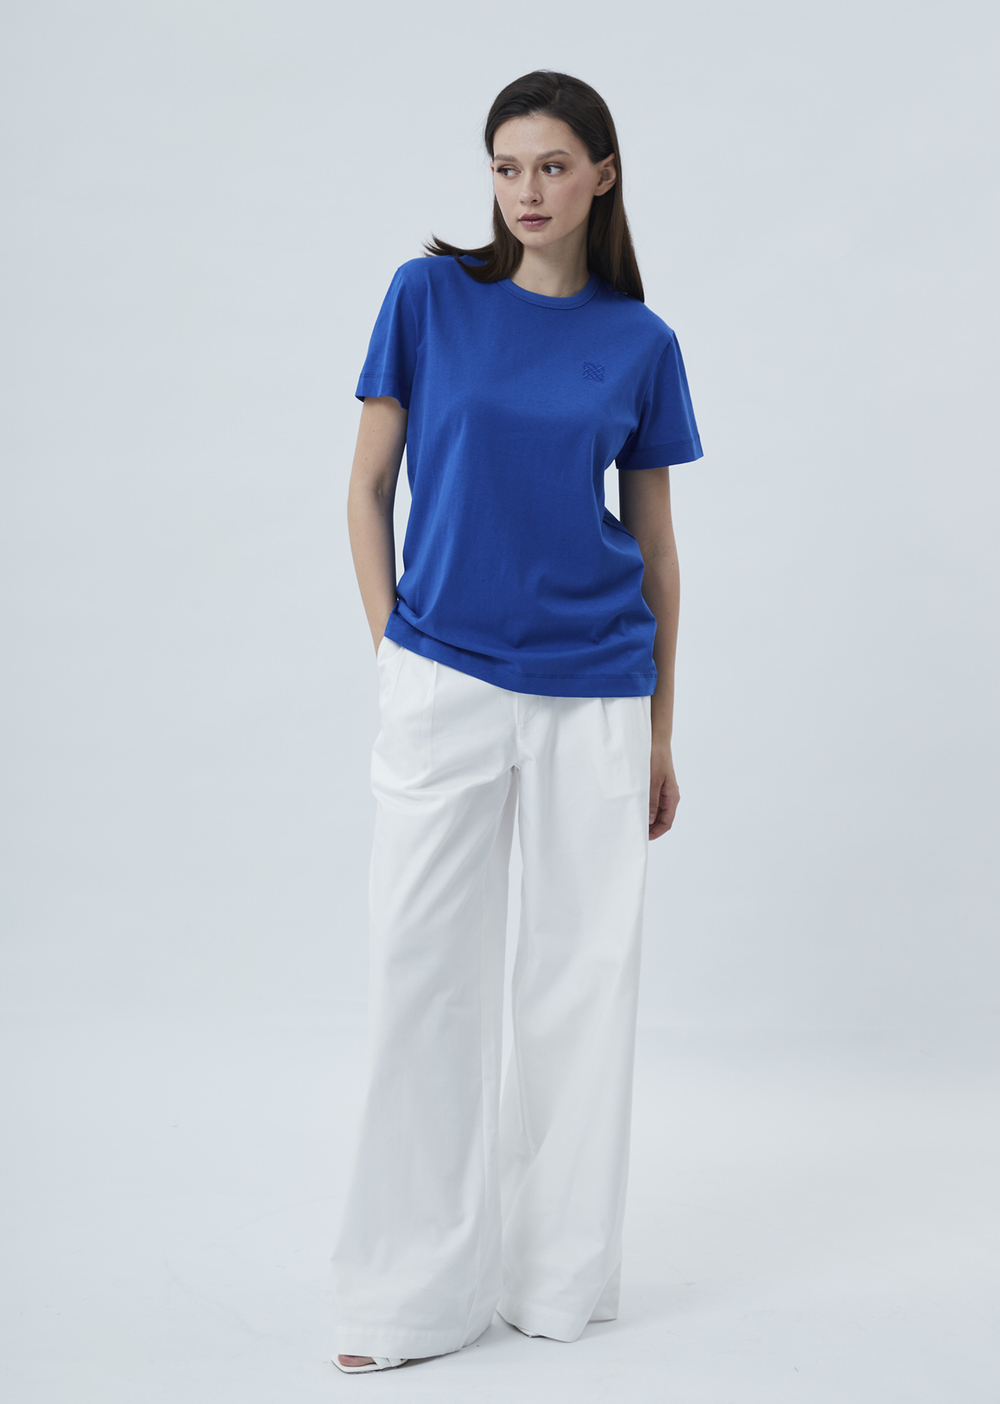 Женская футболка с вышивкой синий р.M